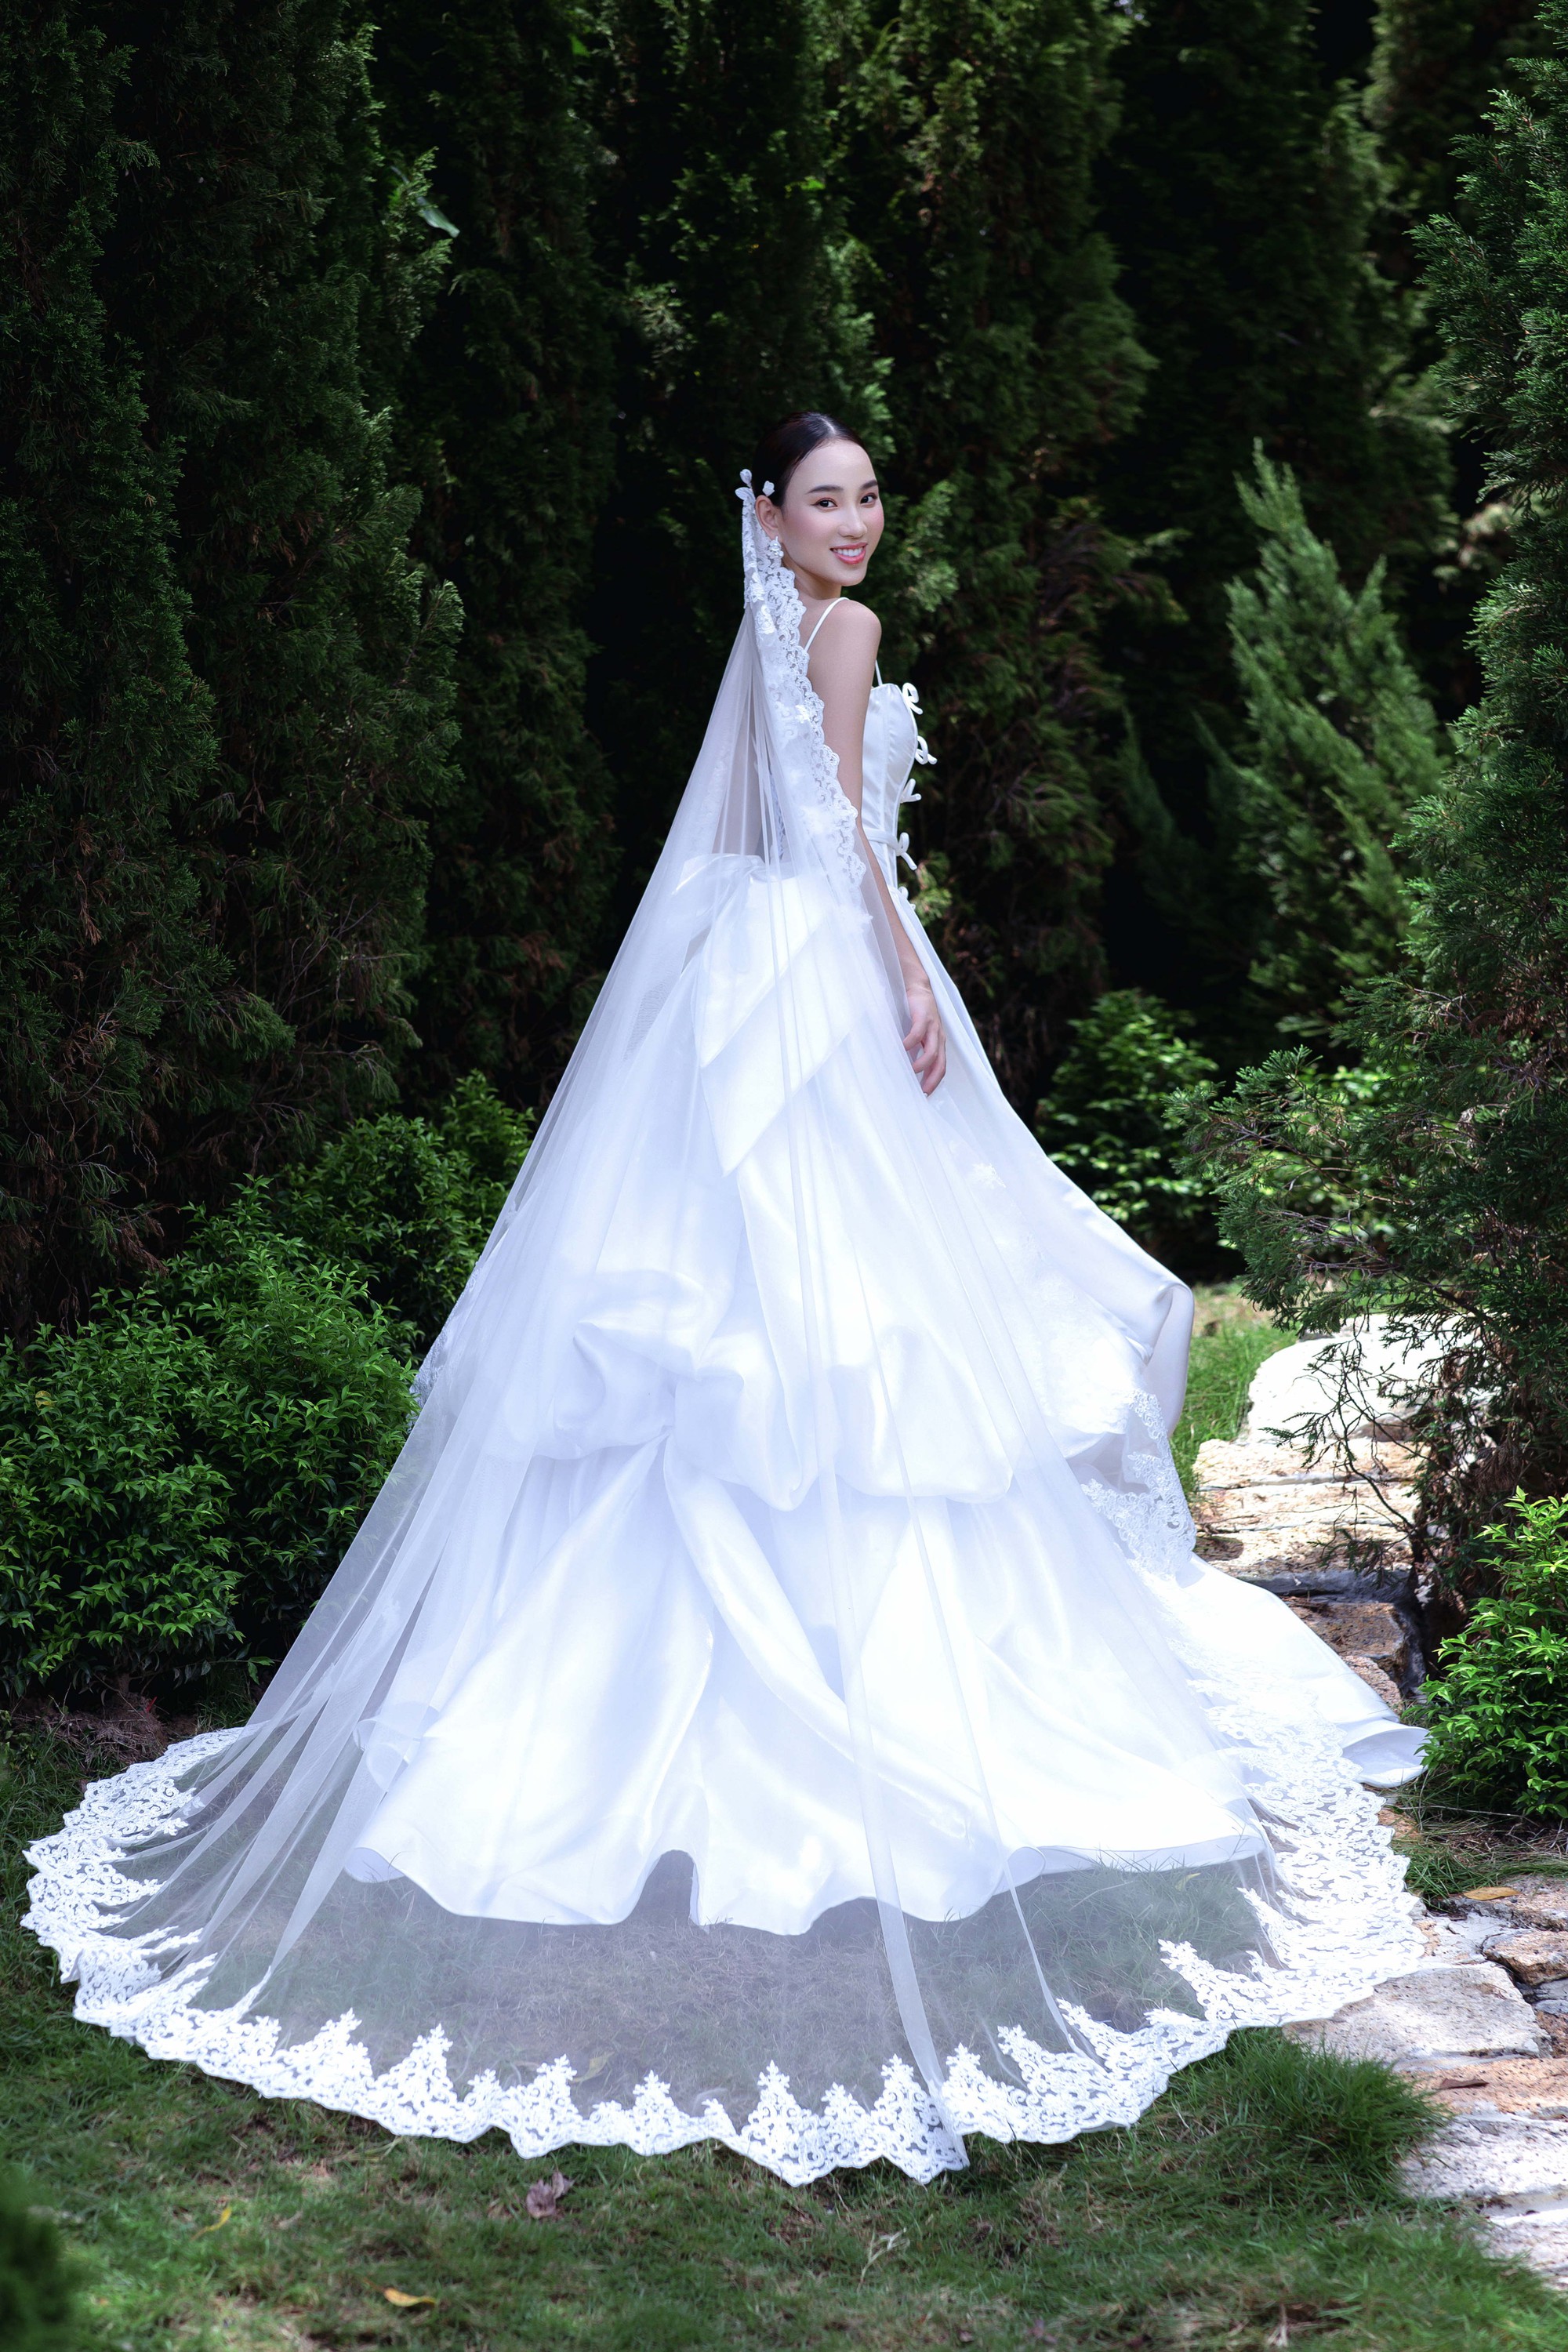 Dịch vụ cho thuê váy cưới chụp ảnh tại Hà Nội uy tín và chuyên nghiệp